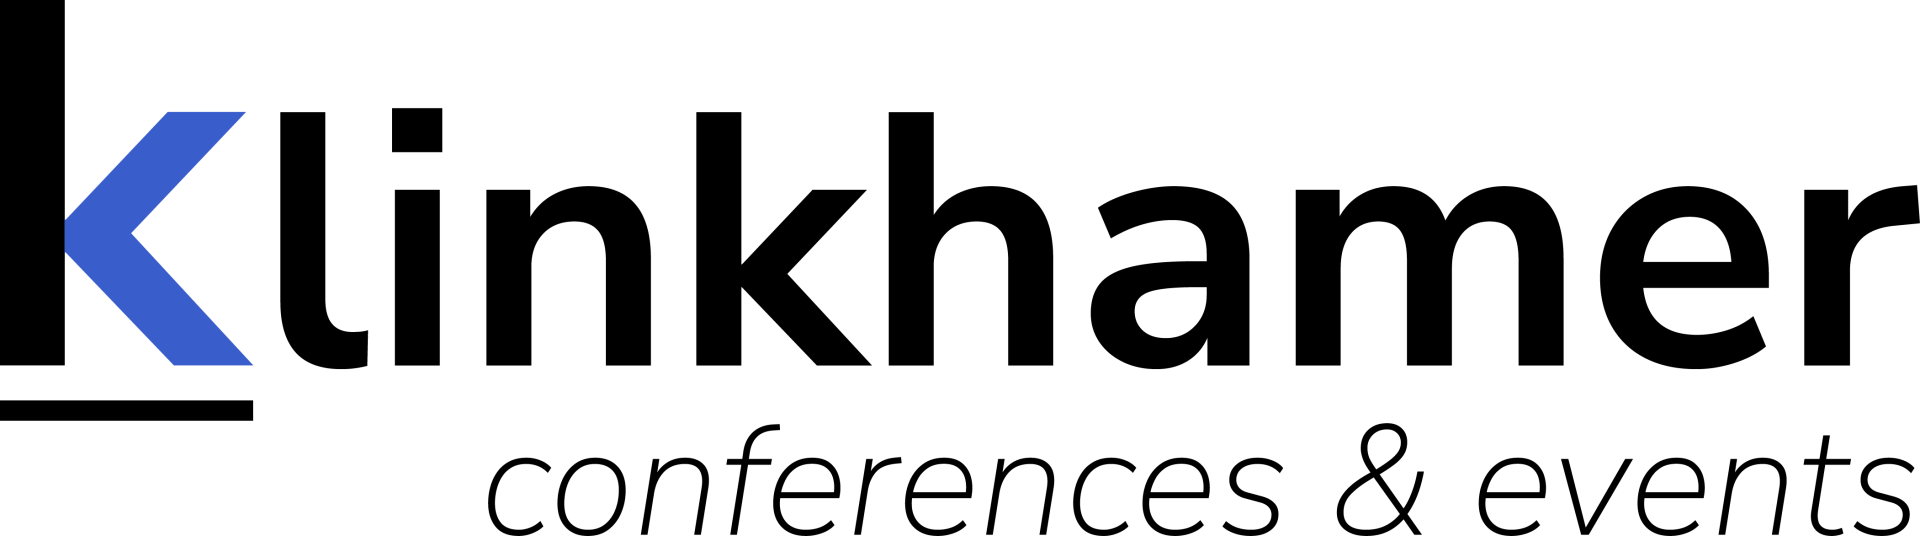 Klinkhamer logo kleur zwart_RGB